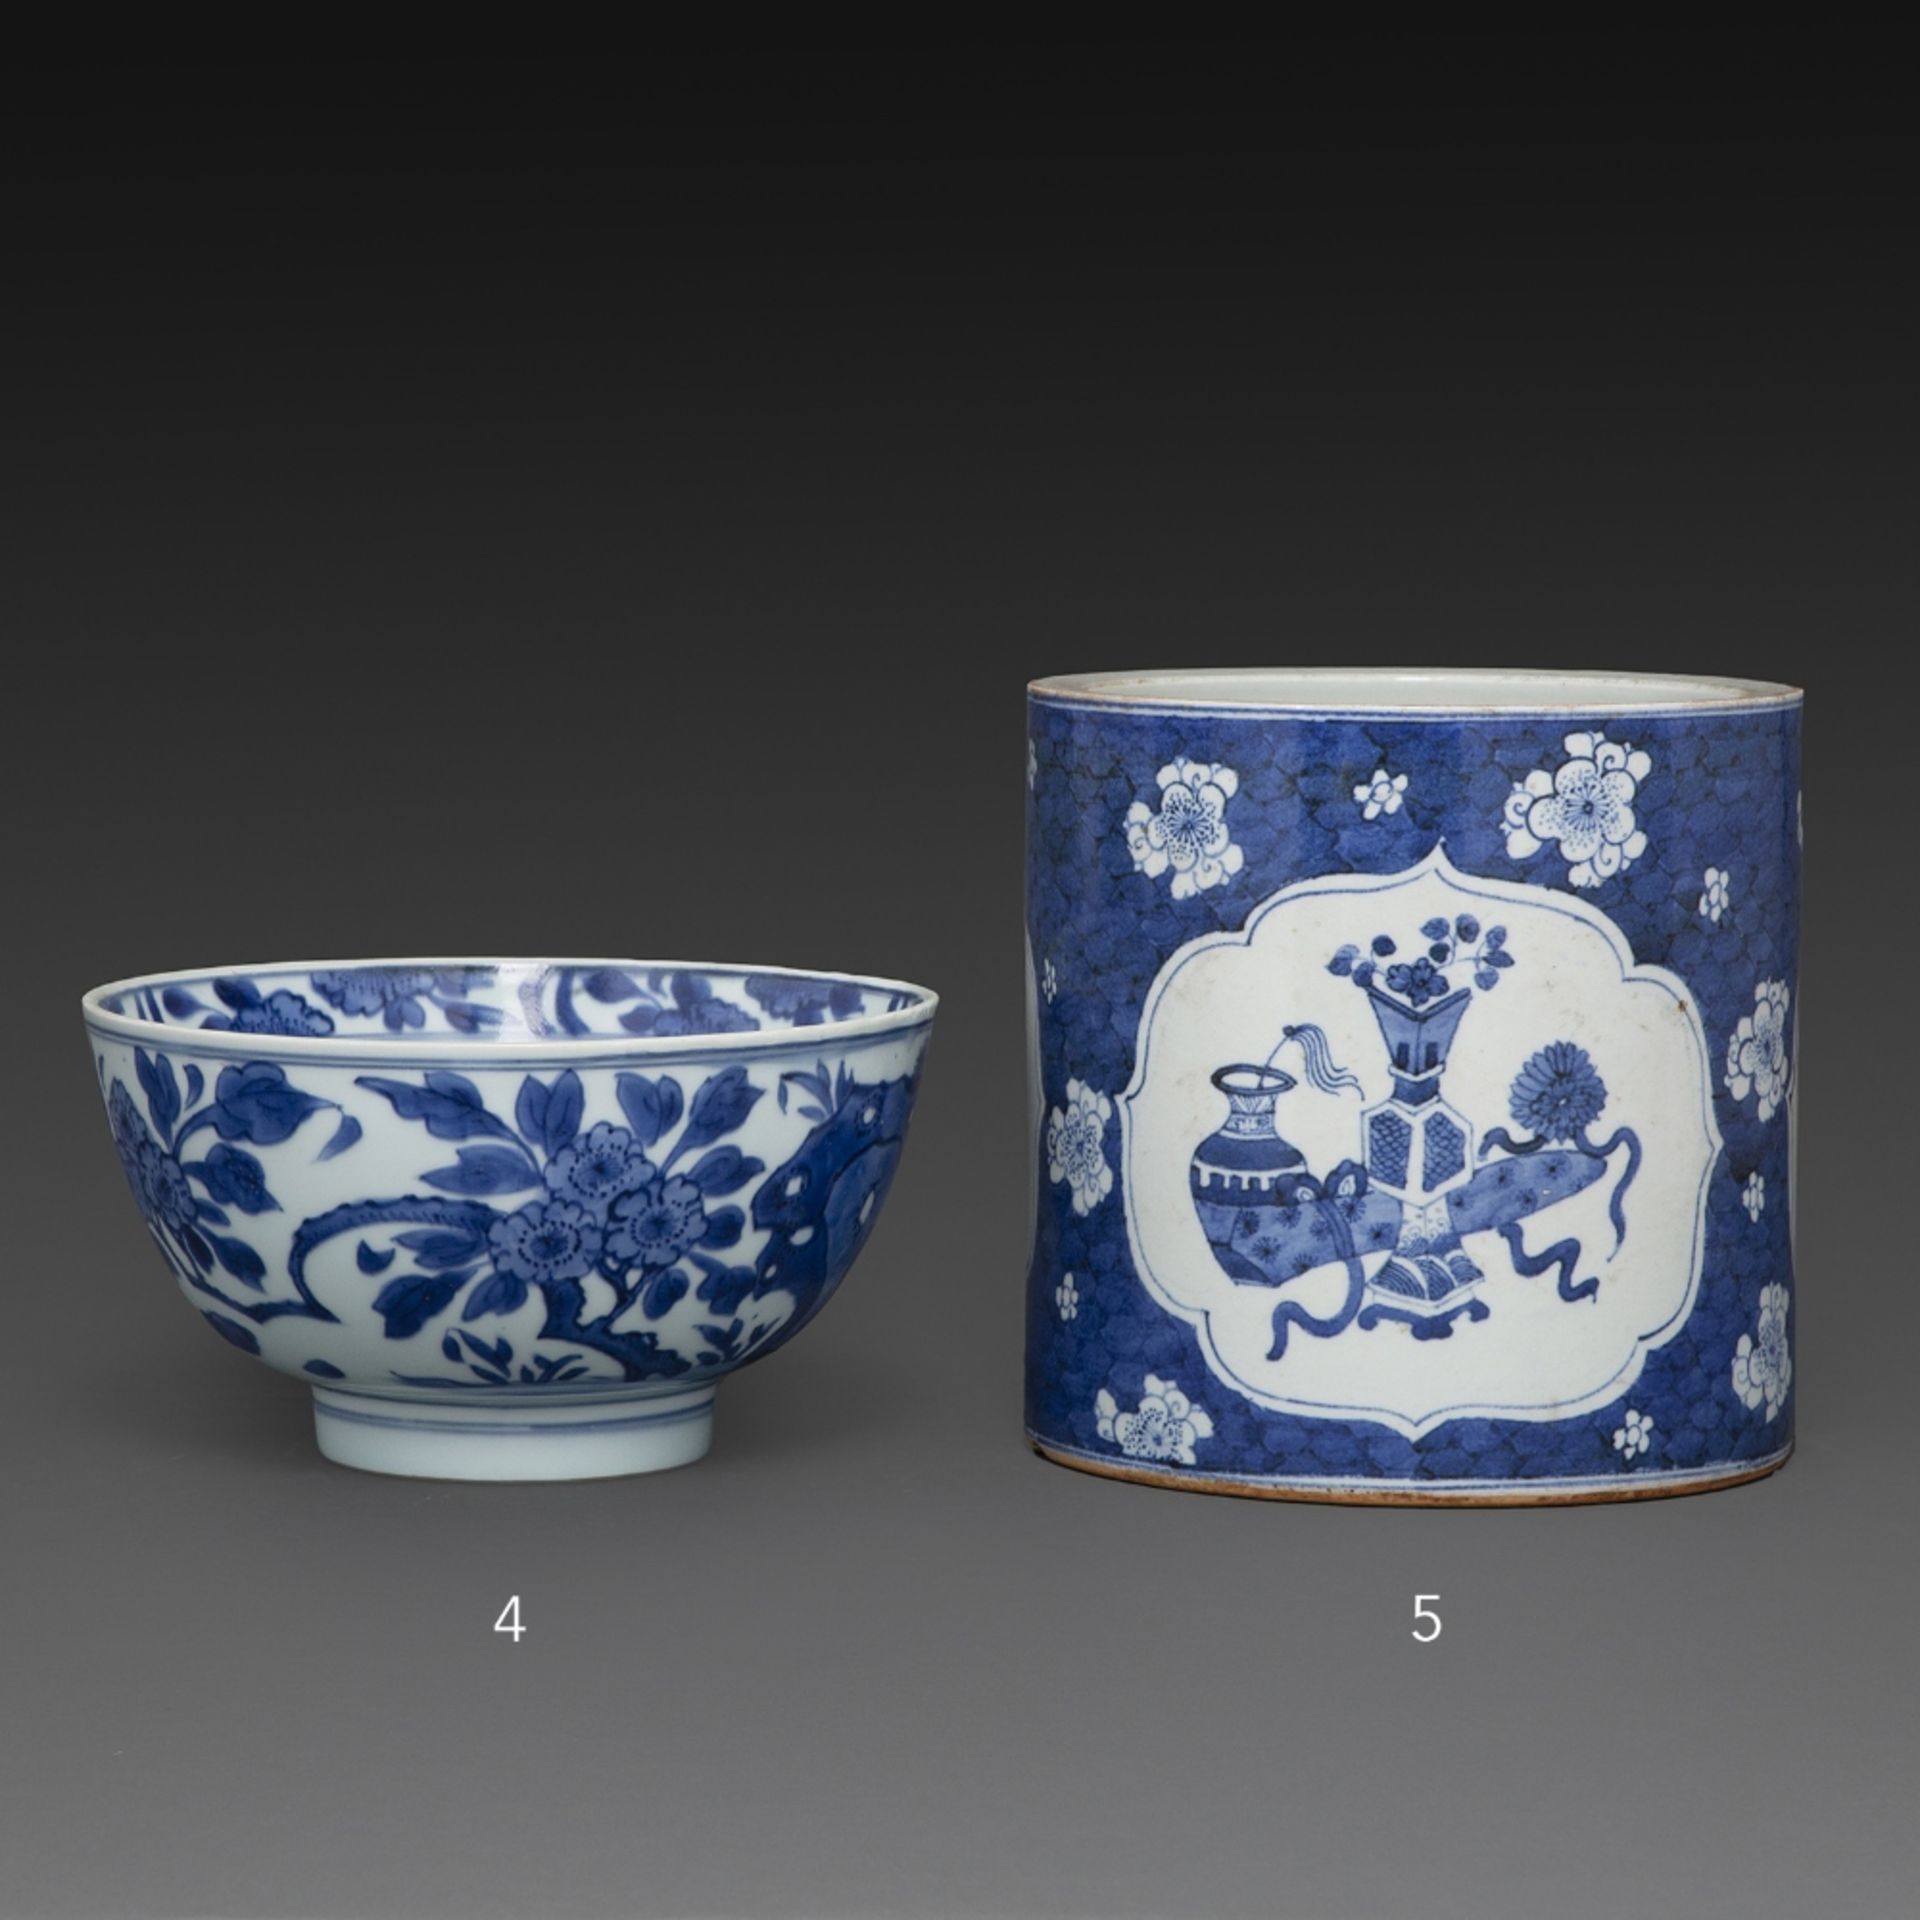 PORTE-PINCEAUX en porcelaine et émaux bleu sous couverte, à décor d'objets mobiliers dans des